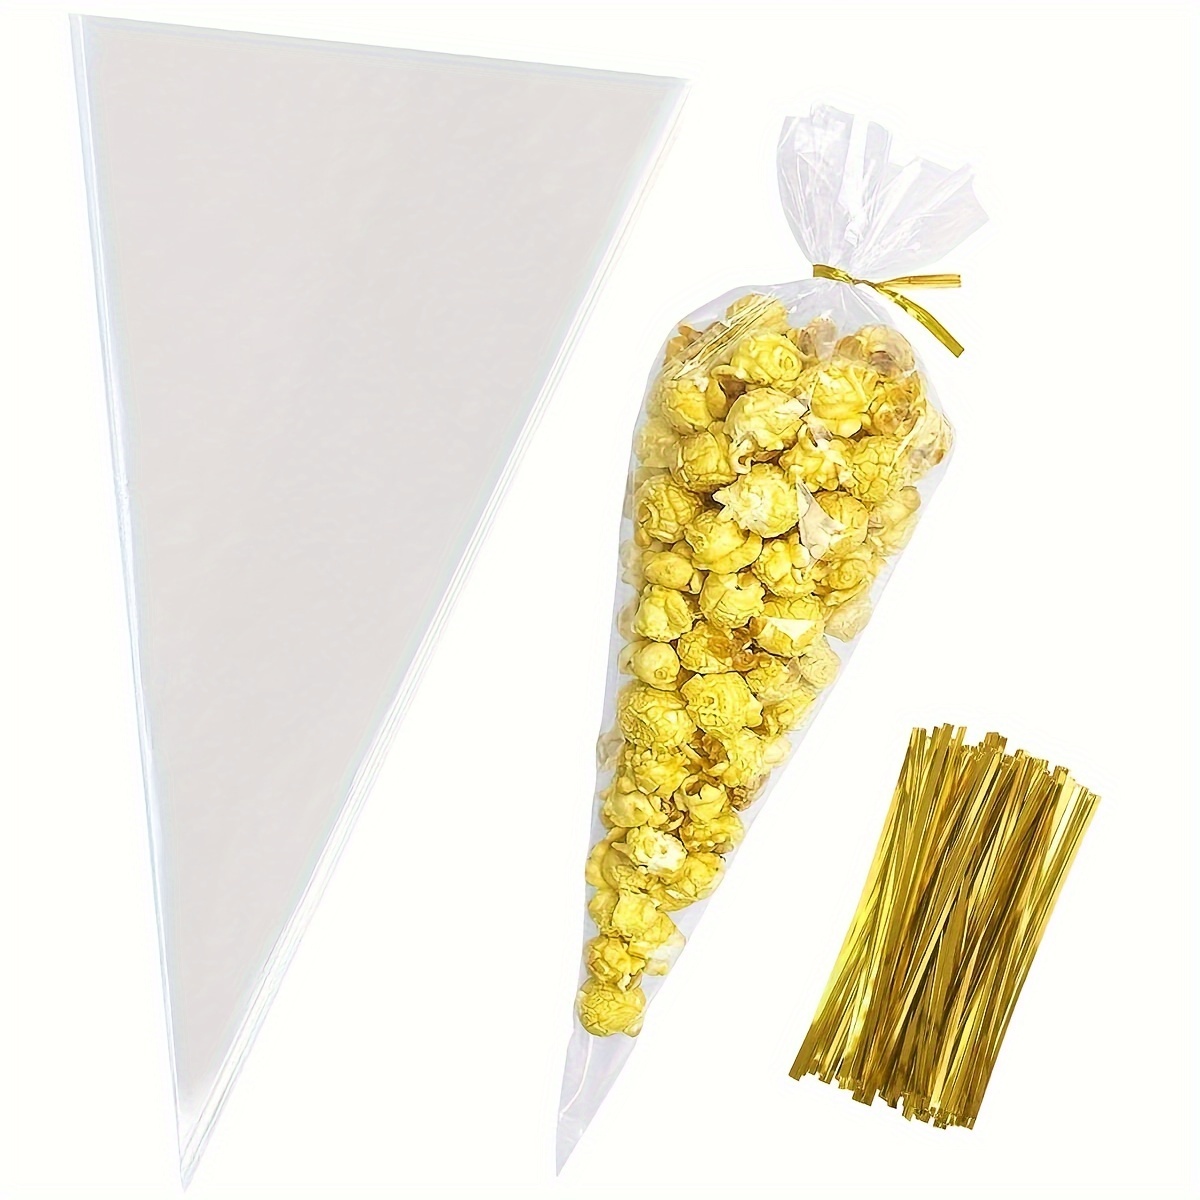 50 bolsas planas transparentes de celofán de 18 x 30 pulgadas para envolver  regalos, panadería, galletas, dulces, postres, cestas de regalo, regalos